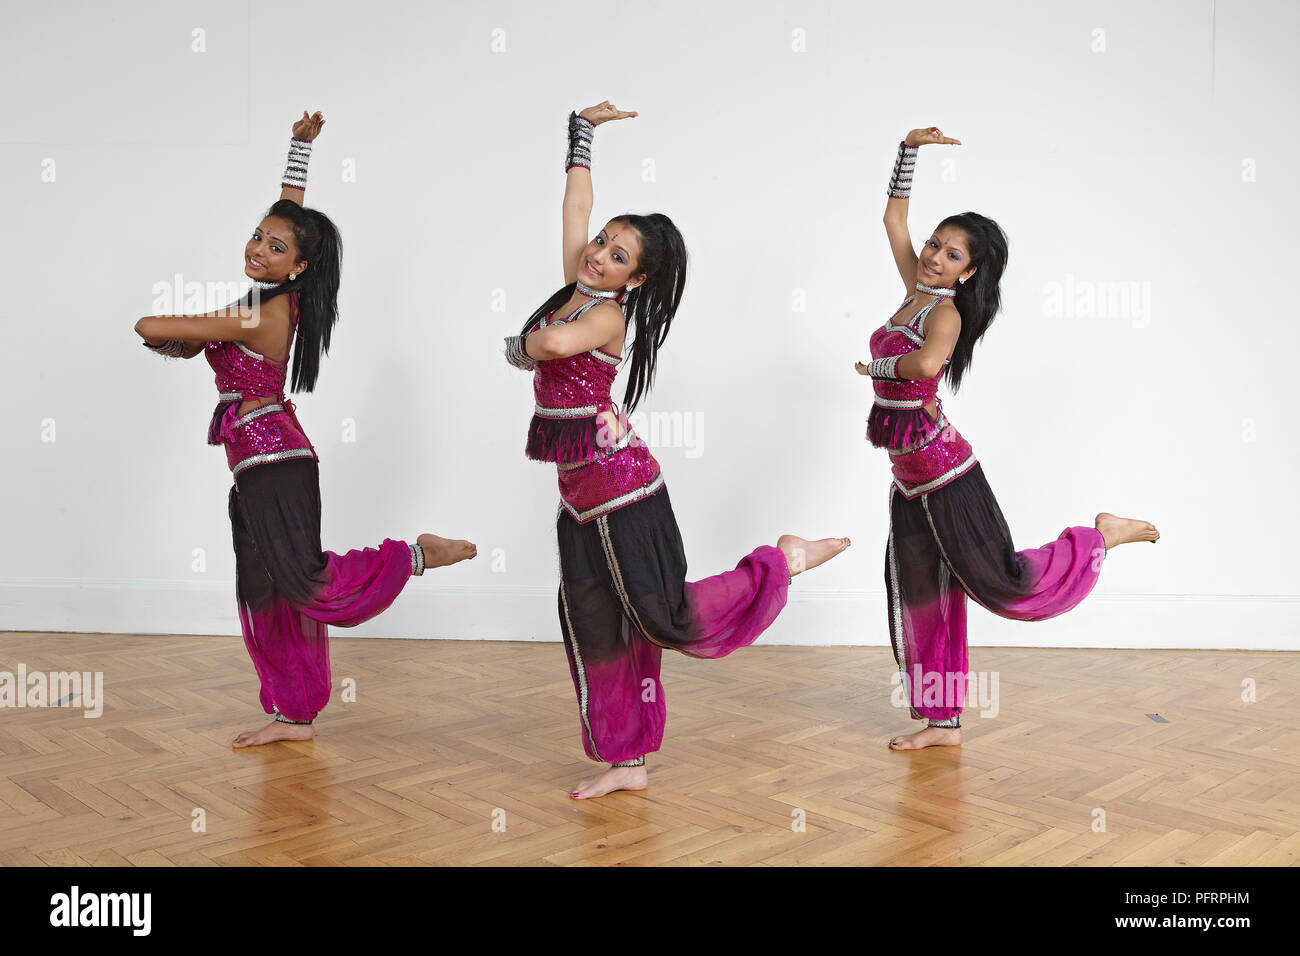 INDIAN DANCE | Indian dancer of Sri Devi Nrithyalaya - Chenn… | Flickr